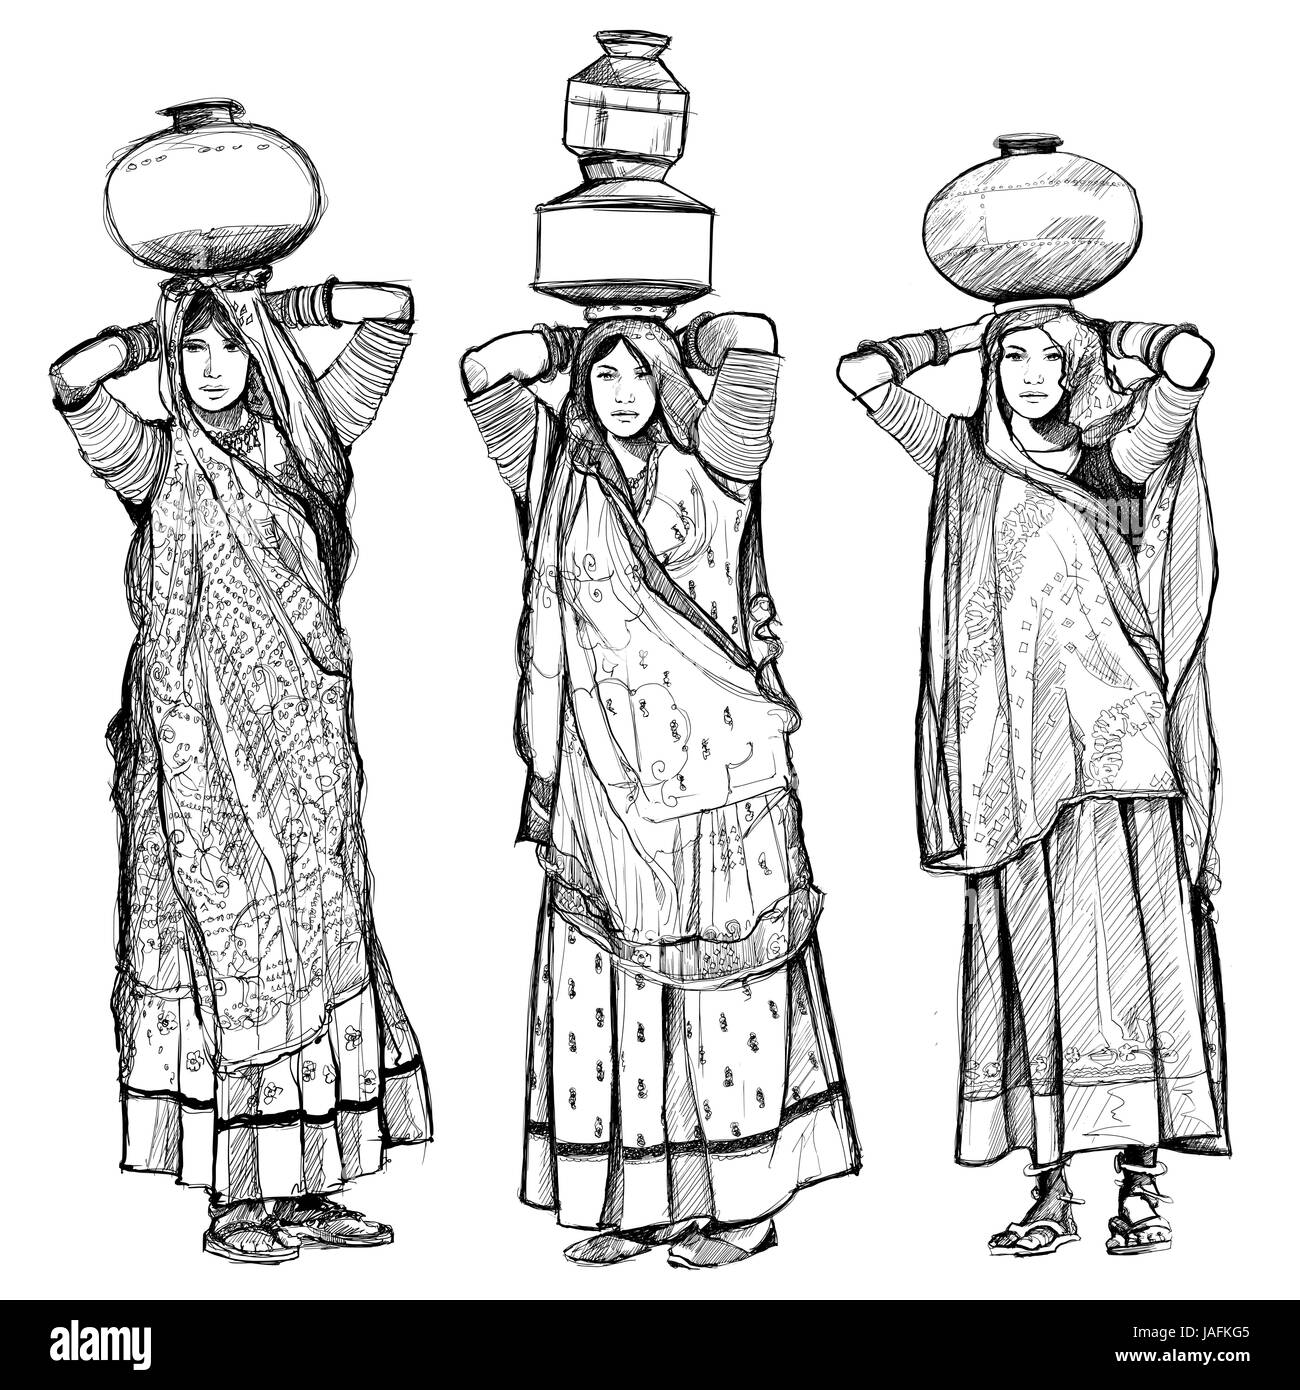 Indien, Frauen, die Gläser auf den Kopf - Vektor-illustration Stock Vektor